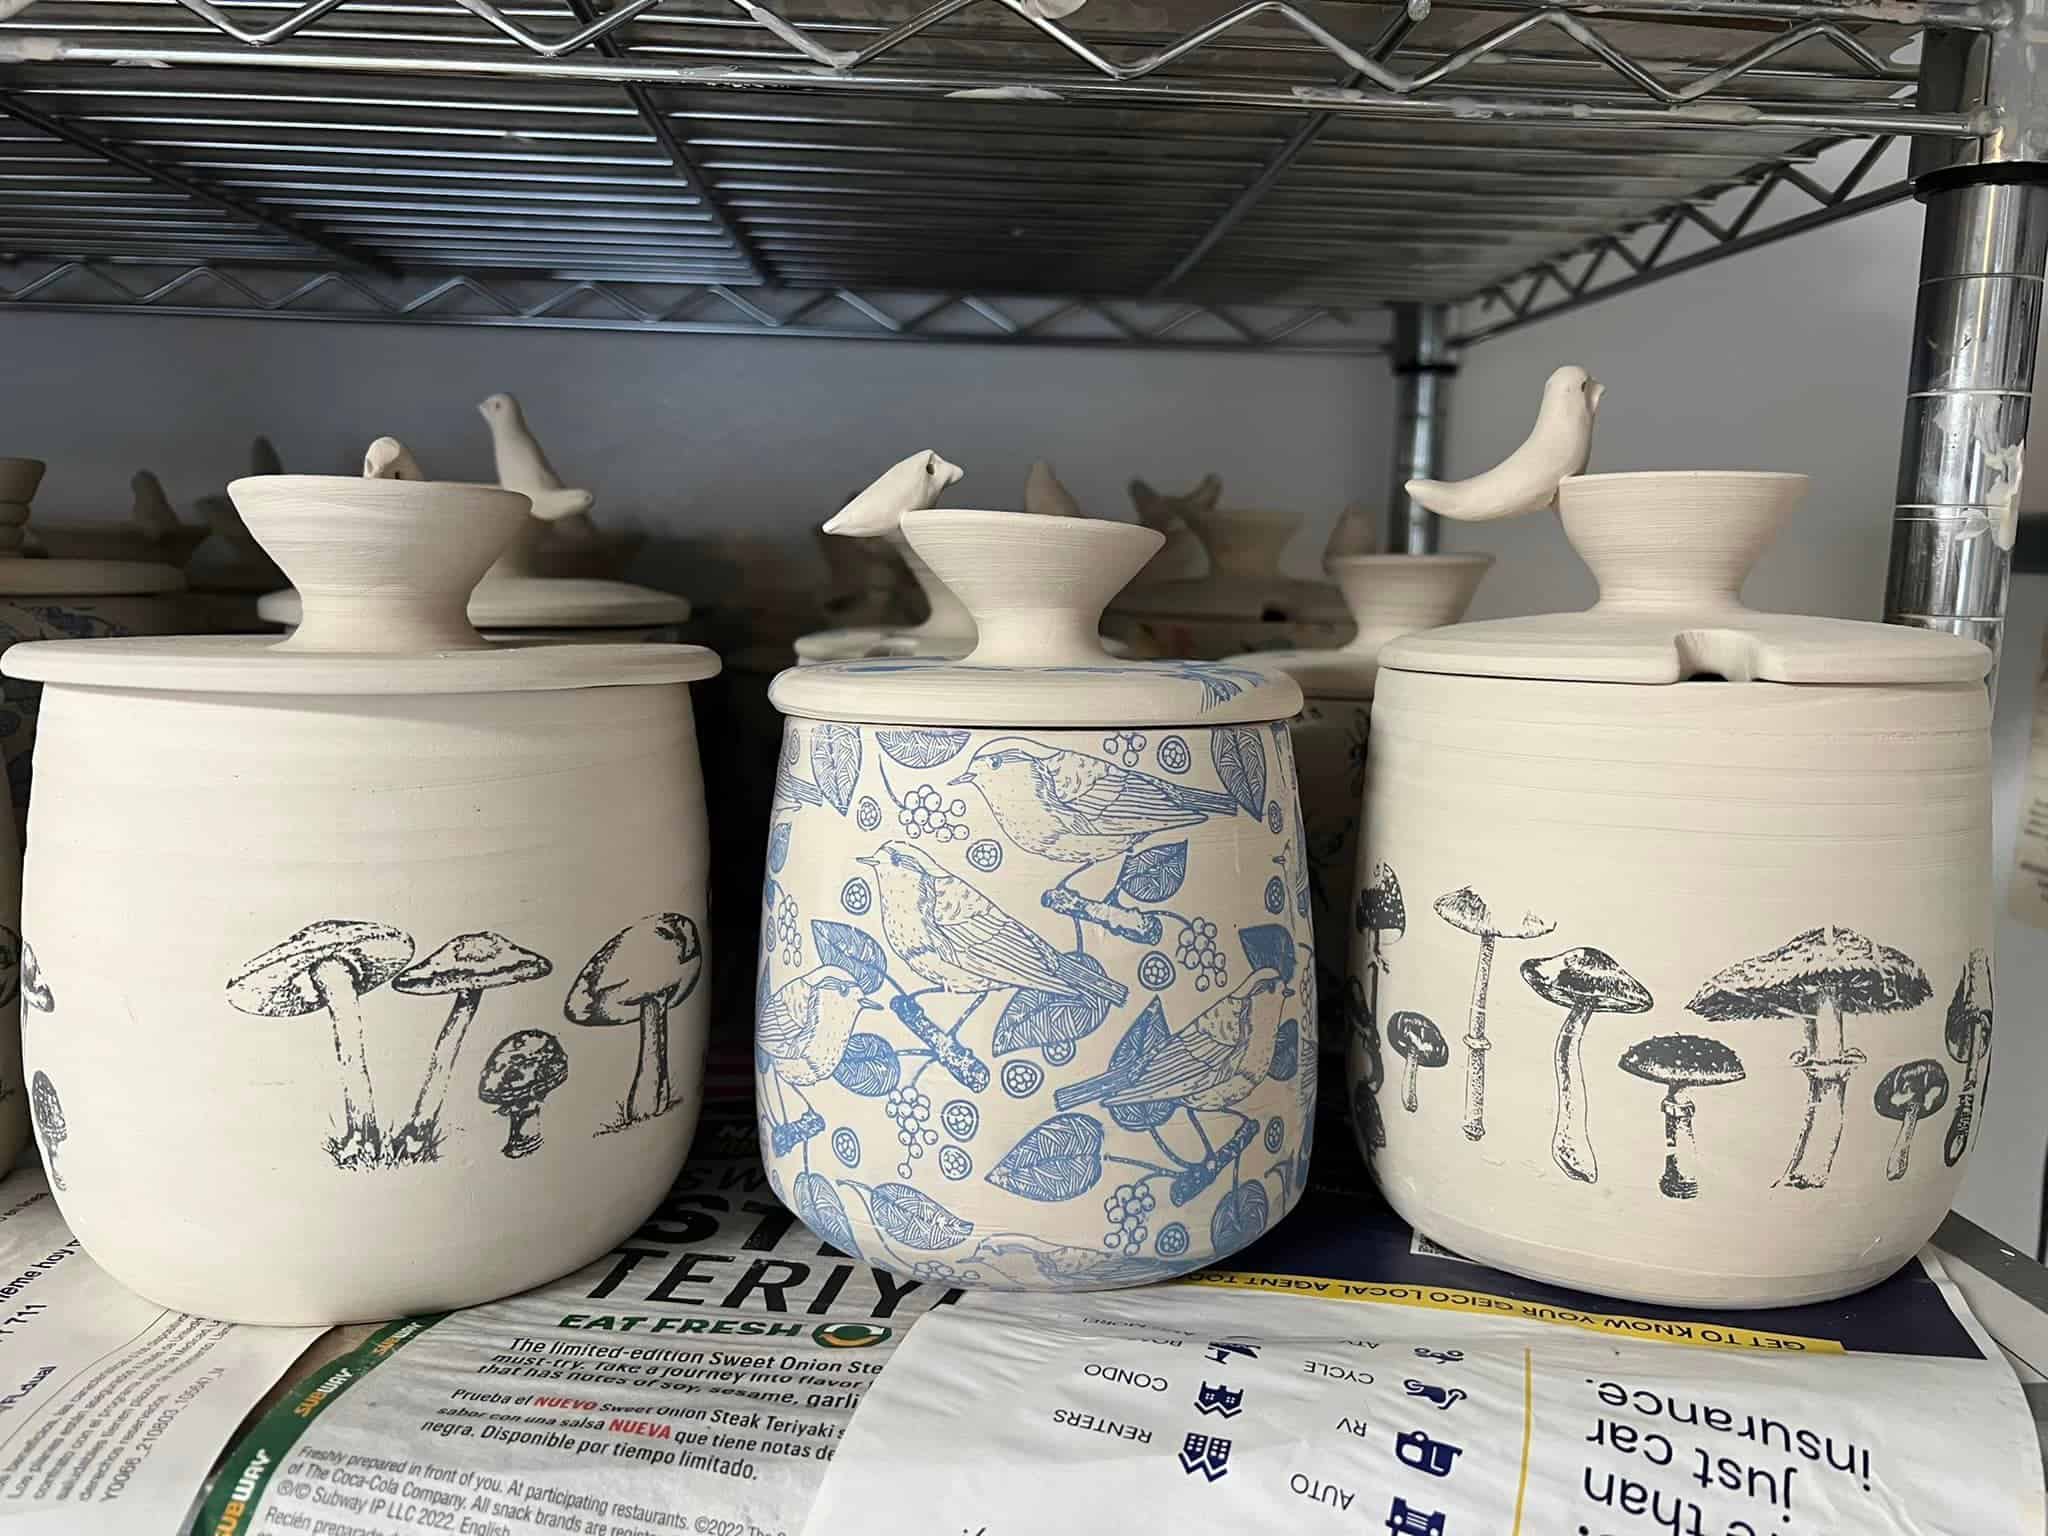 ceramic jars